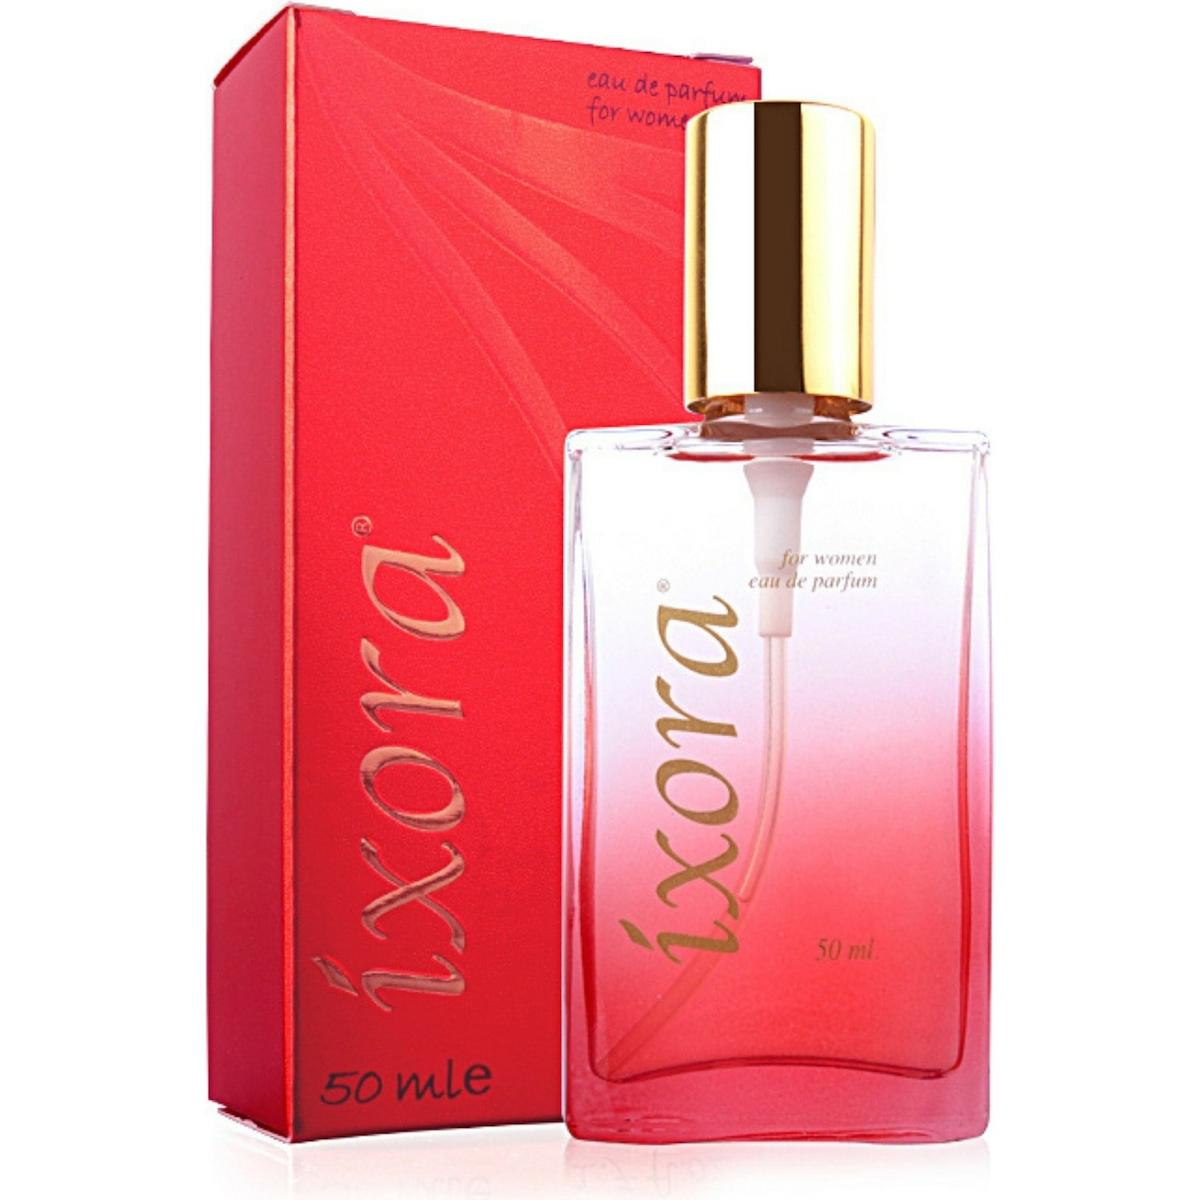 İxora B110 Desing EDP Tarçın-Kişniş Kadın Parfüm 50 ml